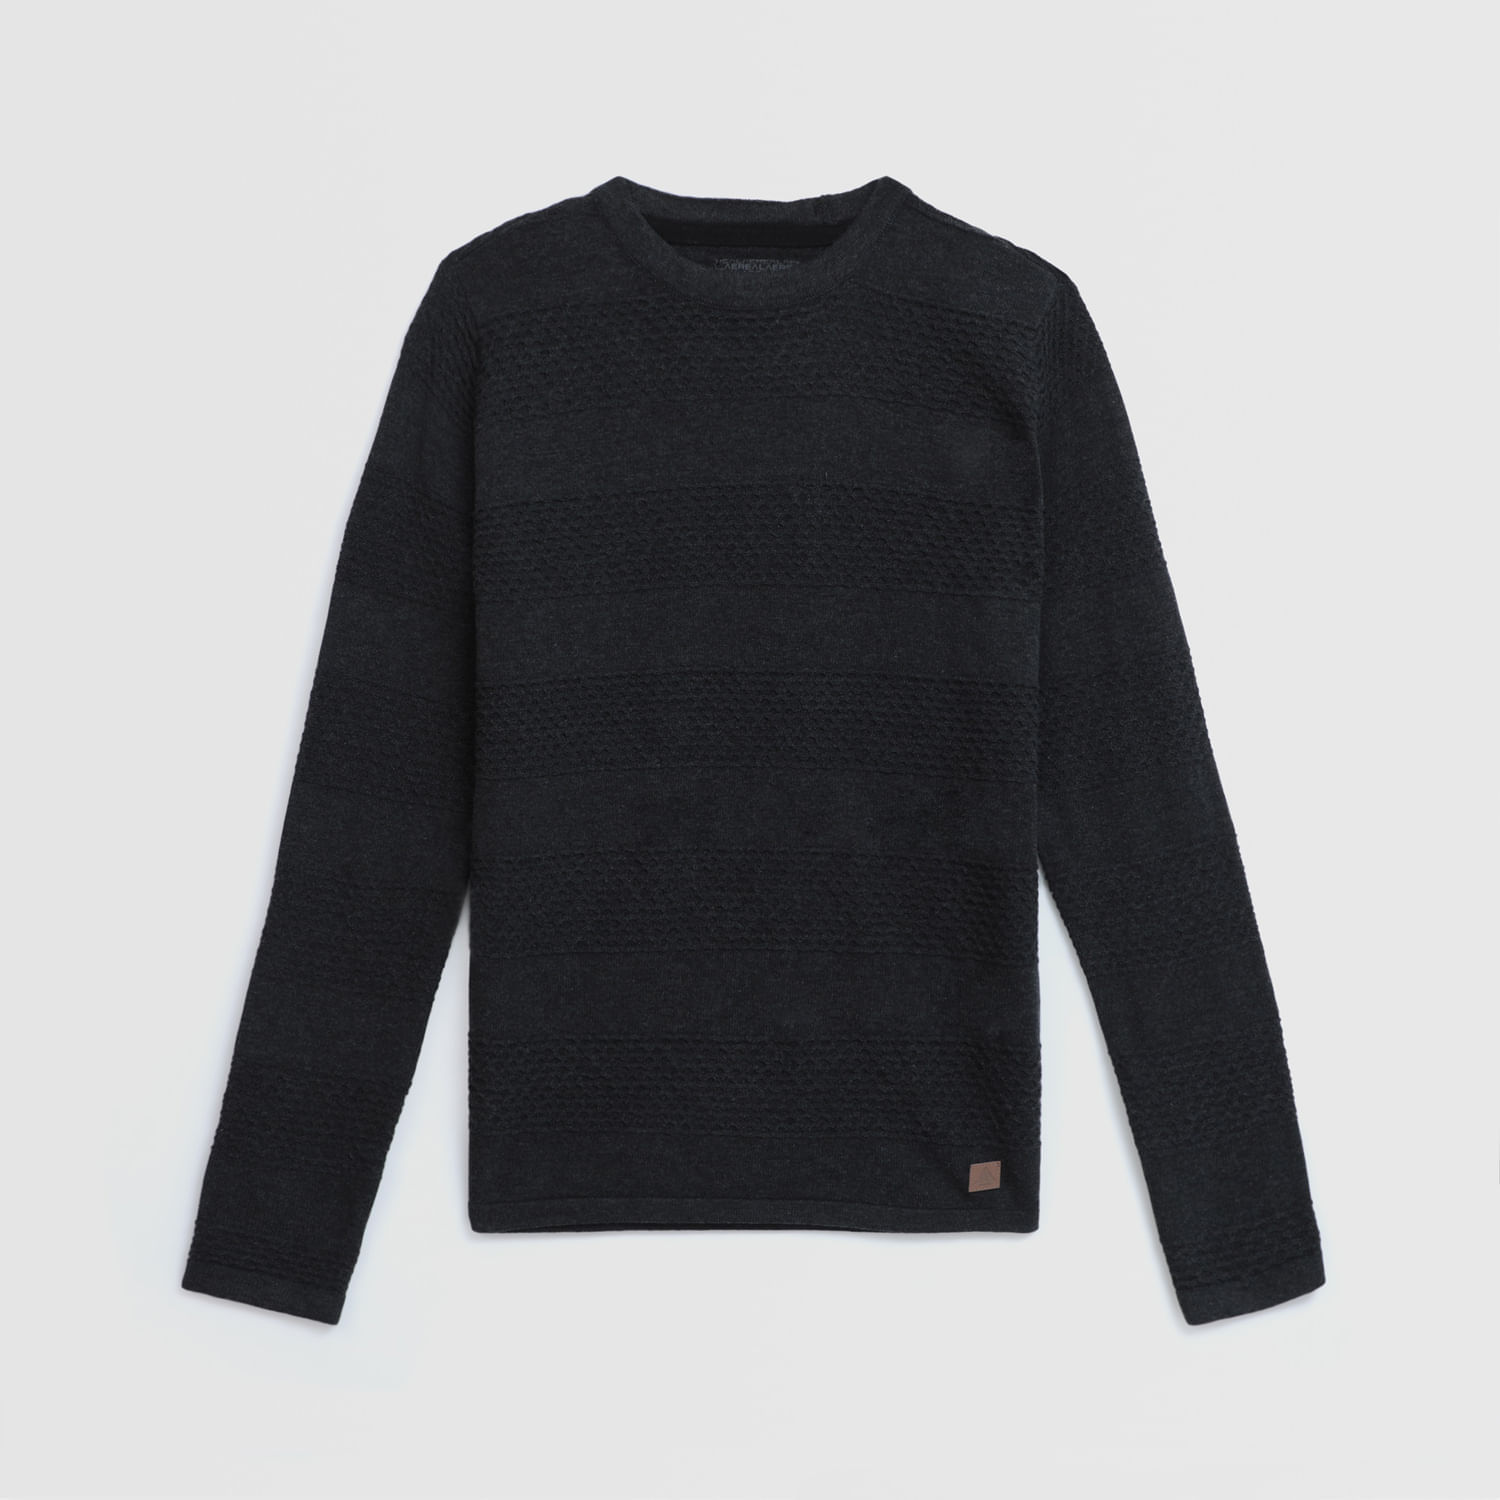 Chompa Sweater Para Teen Niño Aereal Urban Rice